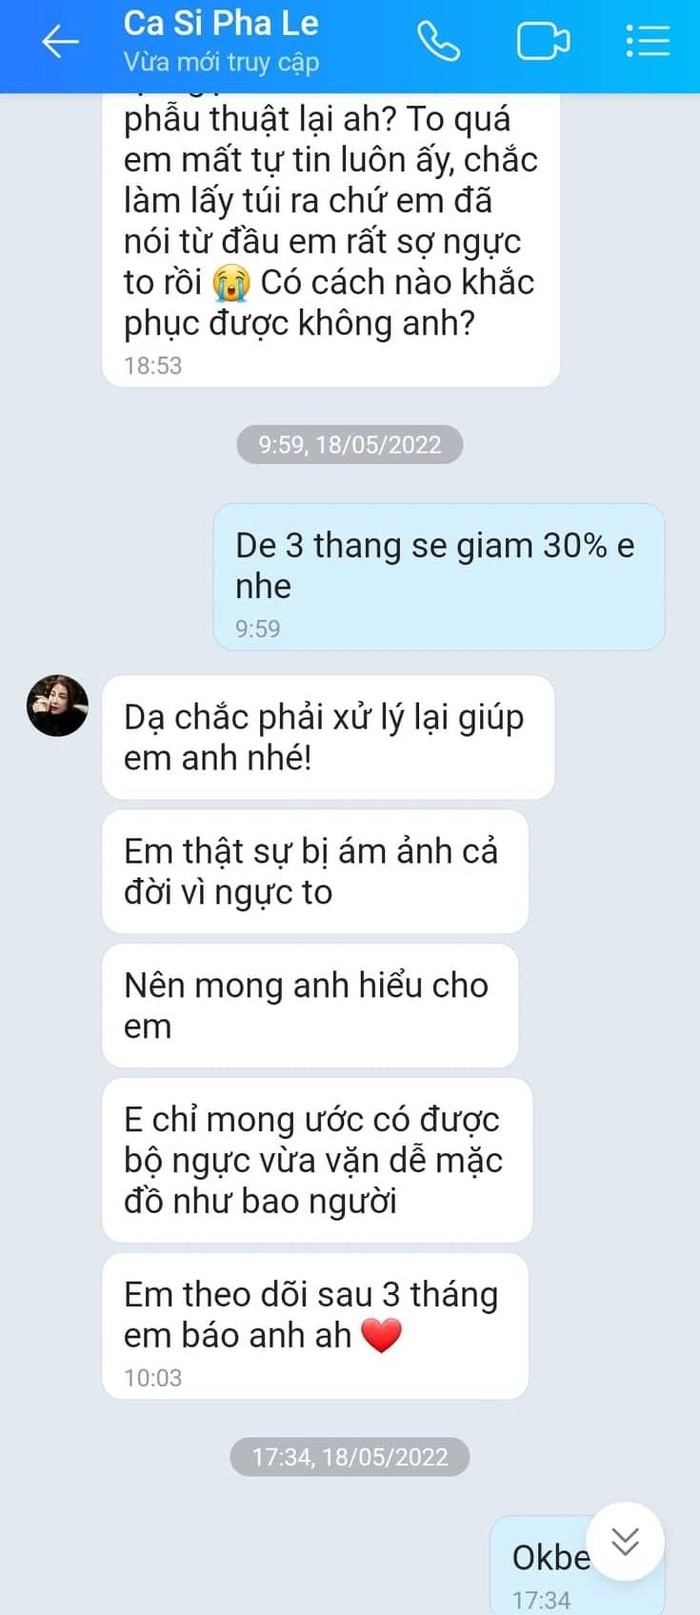 Pha Le to Chiem Quoc Thai 